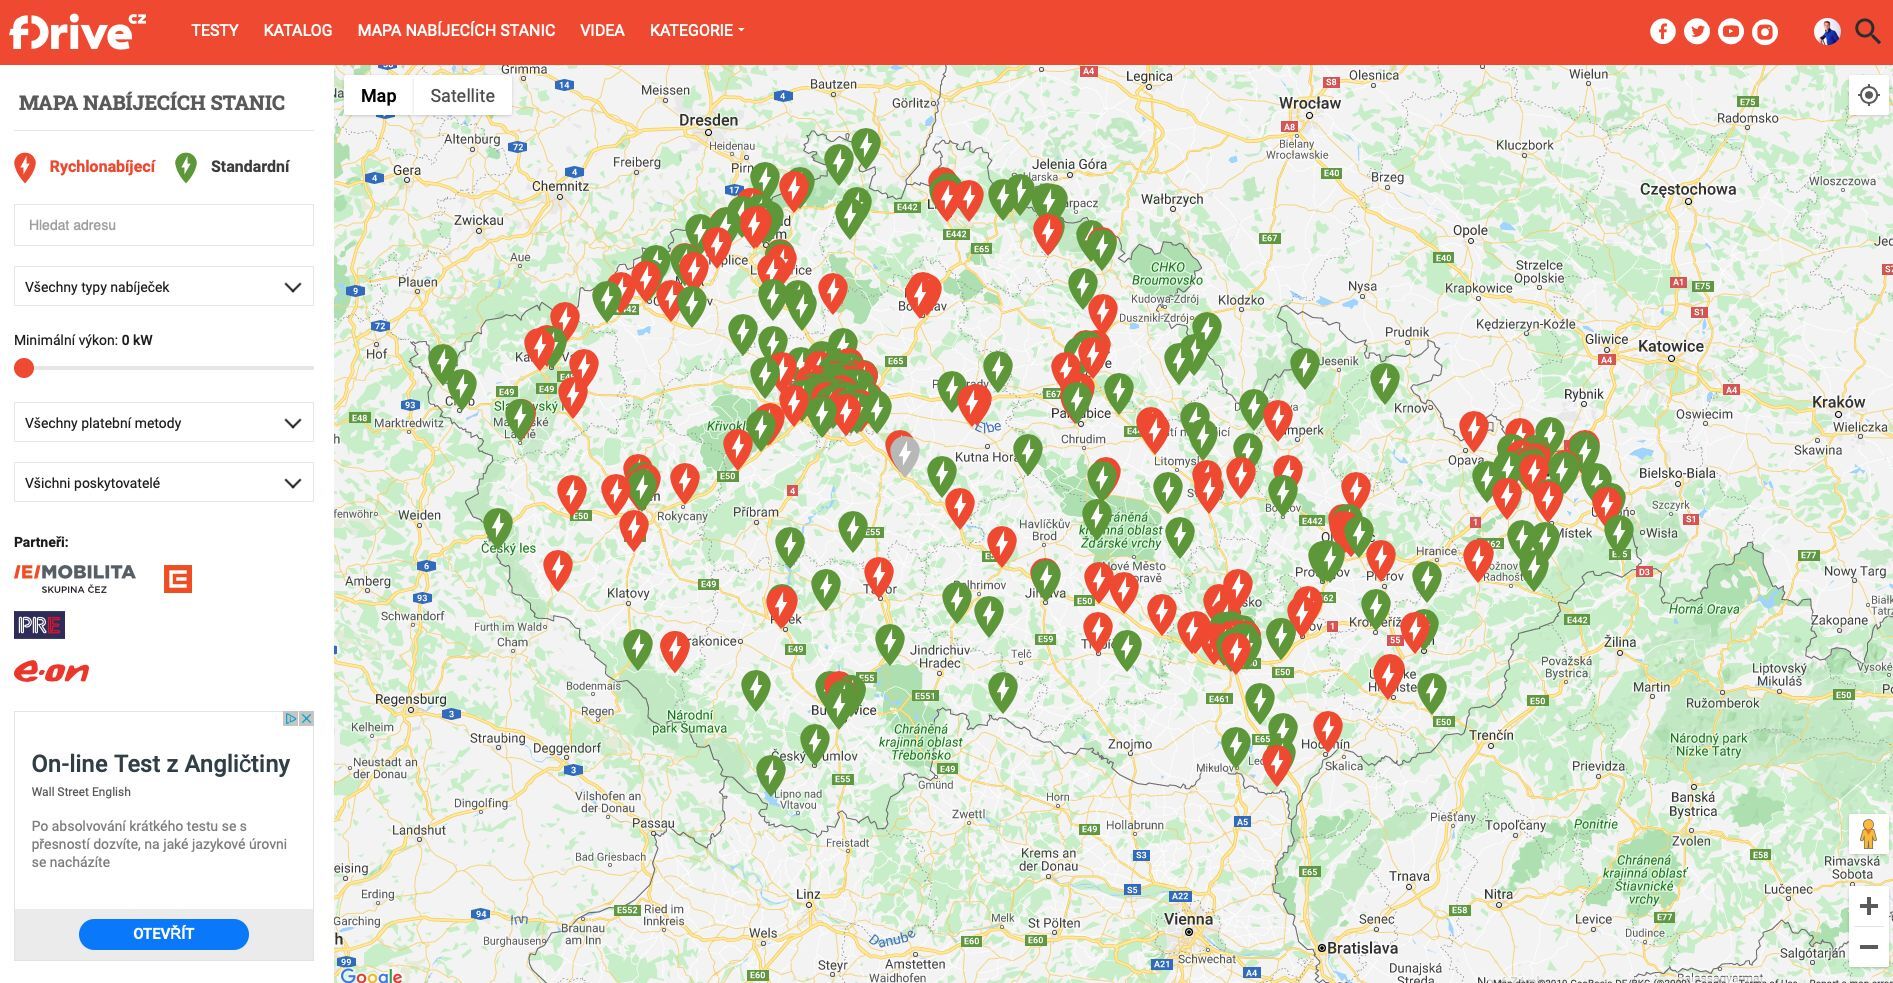 Mapa nabíjecích stanic na fDrive.cz